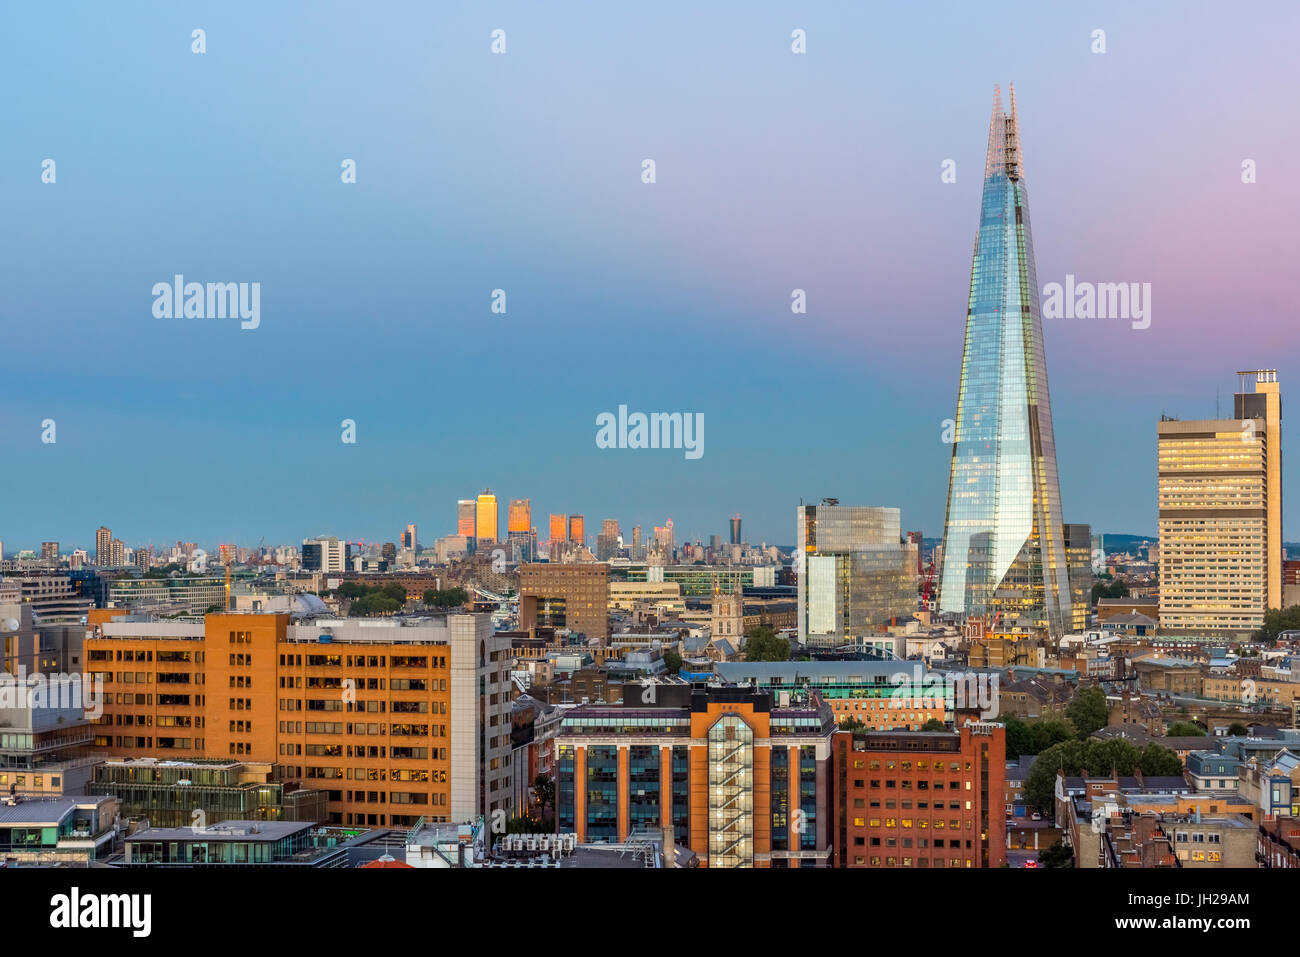 The Shard, London, England, United Kingdom, Europe Stock Photo